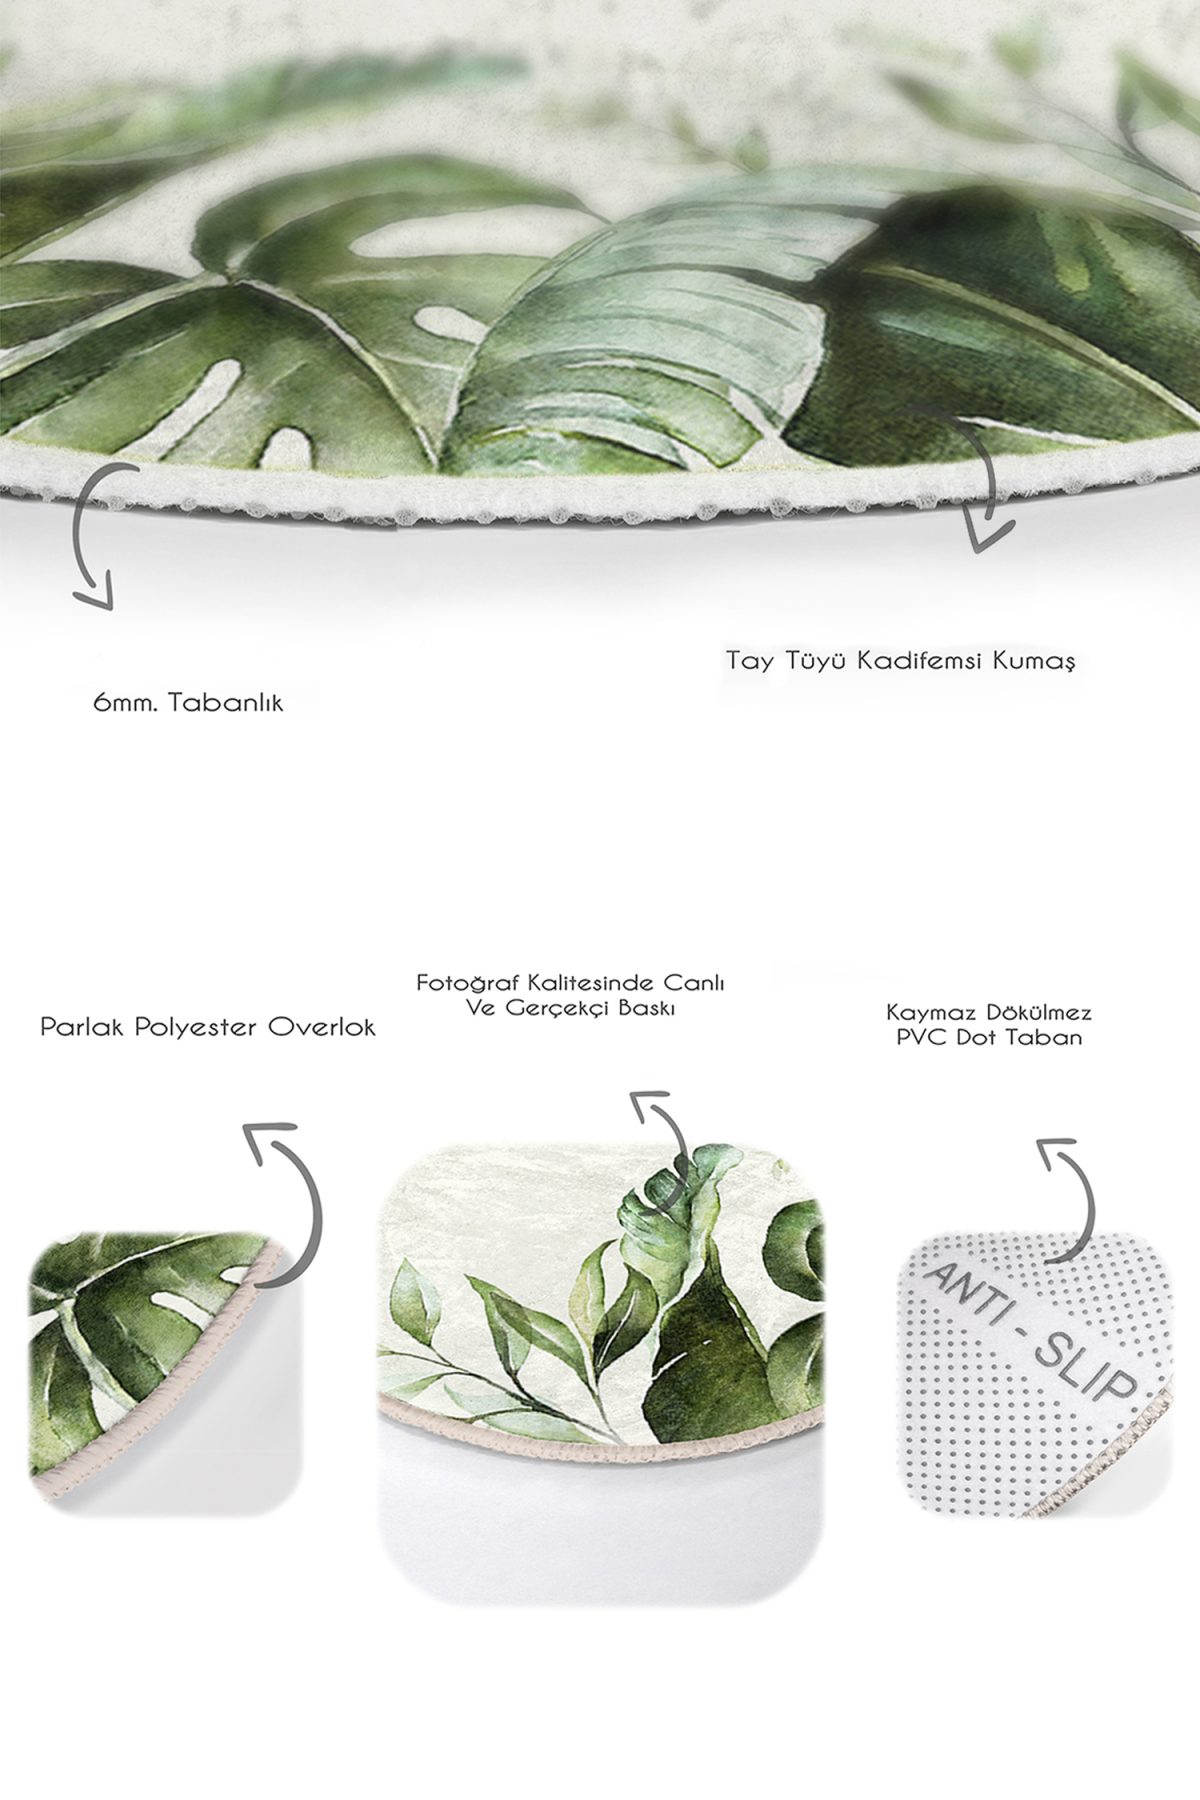 Krem Zeminli Yeşil Tropik Yapraklar Özel Tasarım 2'li Oval Kaymaz Tabanlı Banyo & Mutfak Paspas Takımı Realhomes